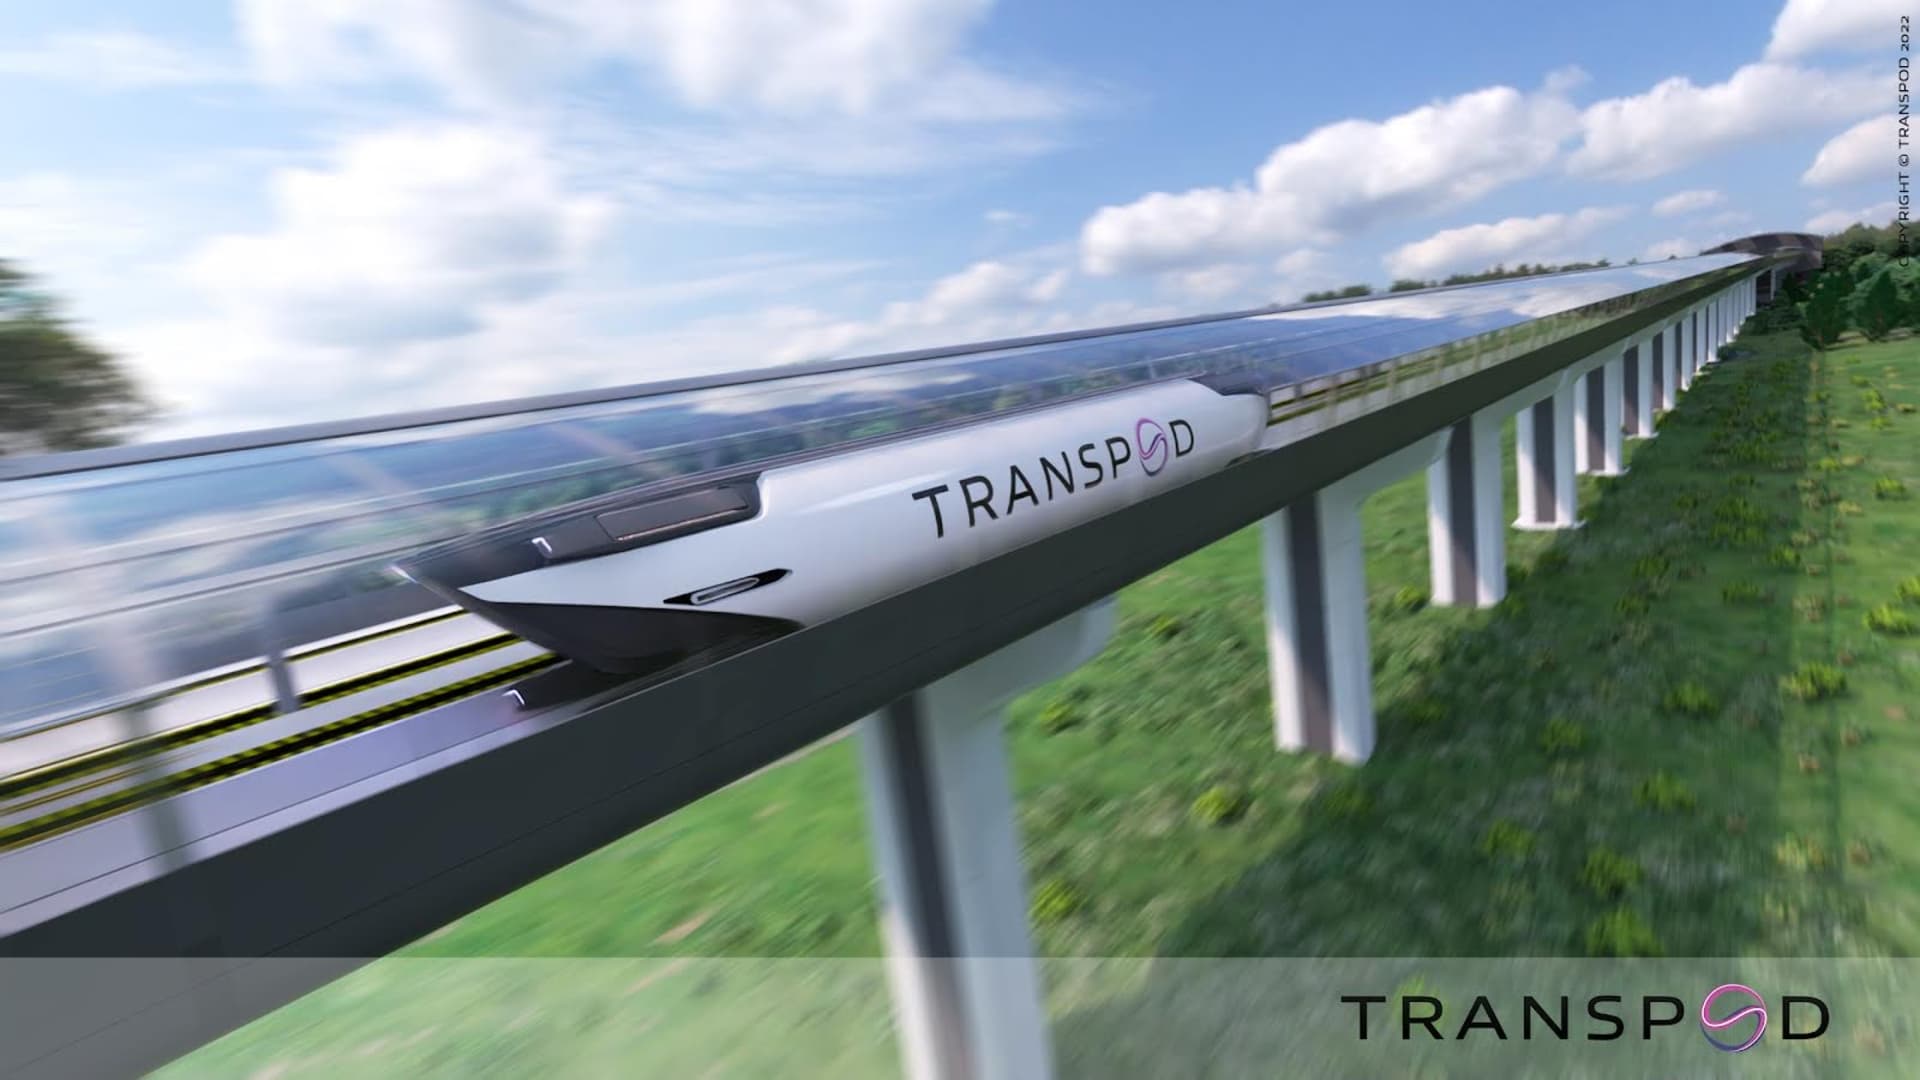 TransPod wil een FluxJet bouwen, een hybride jet met een snelheid van 620 mph